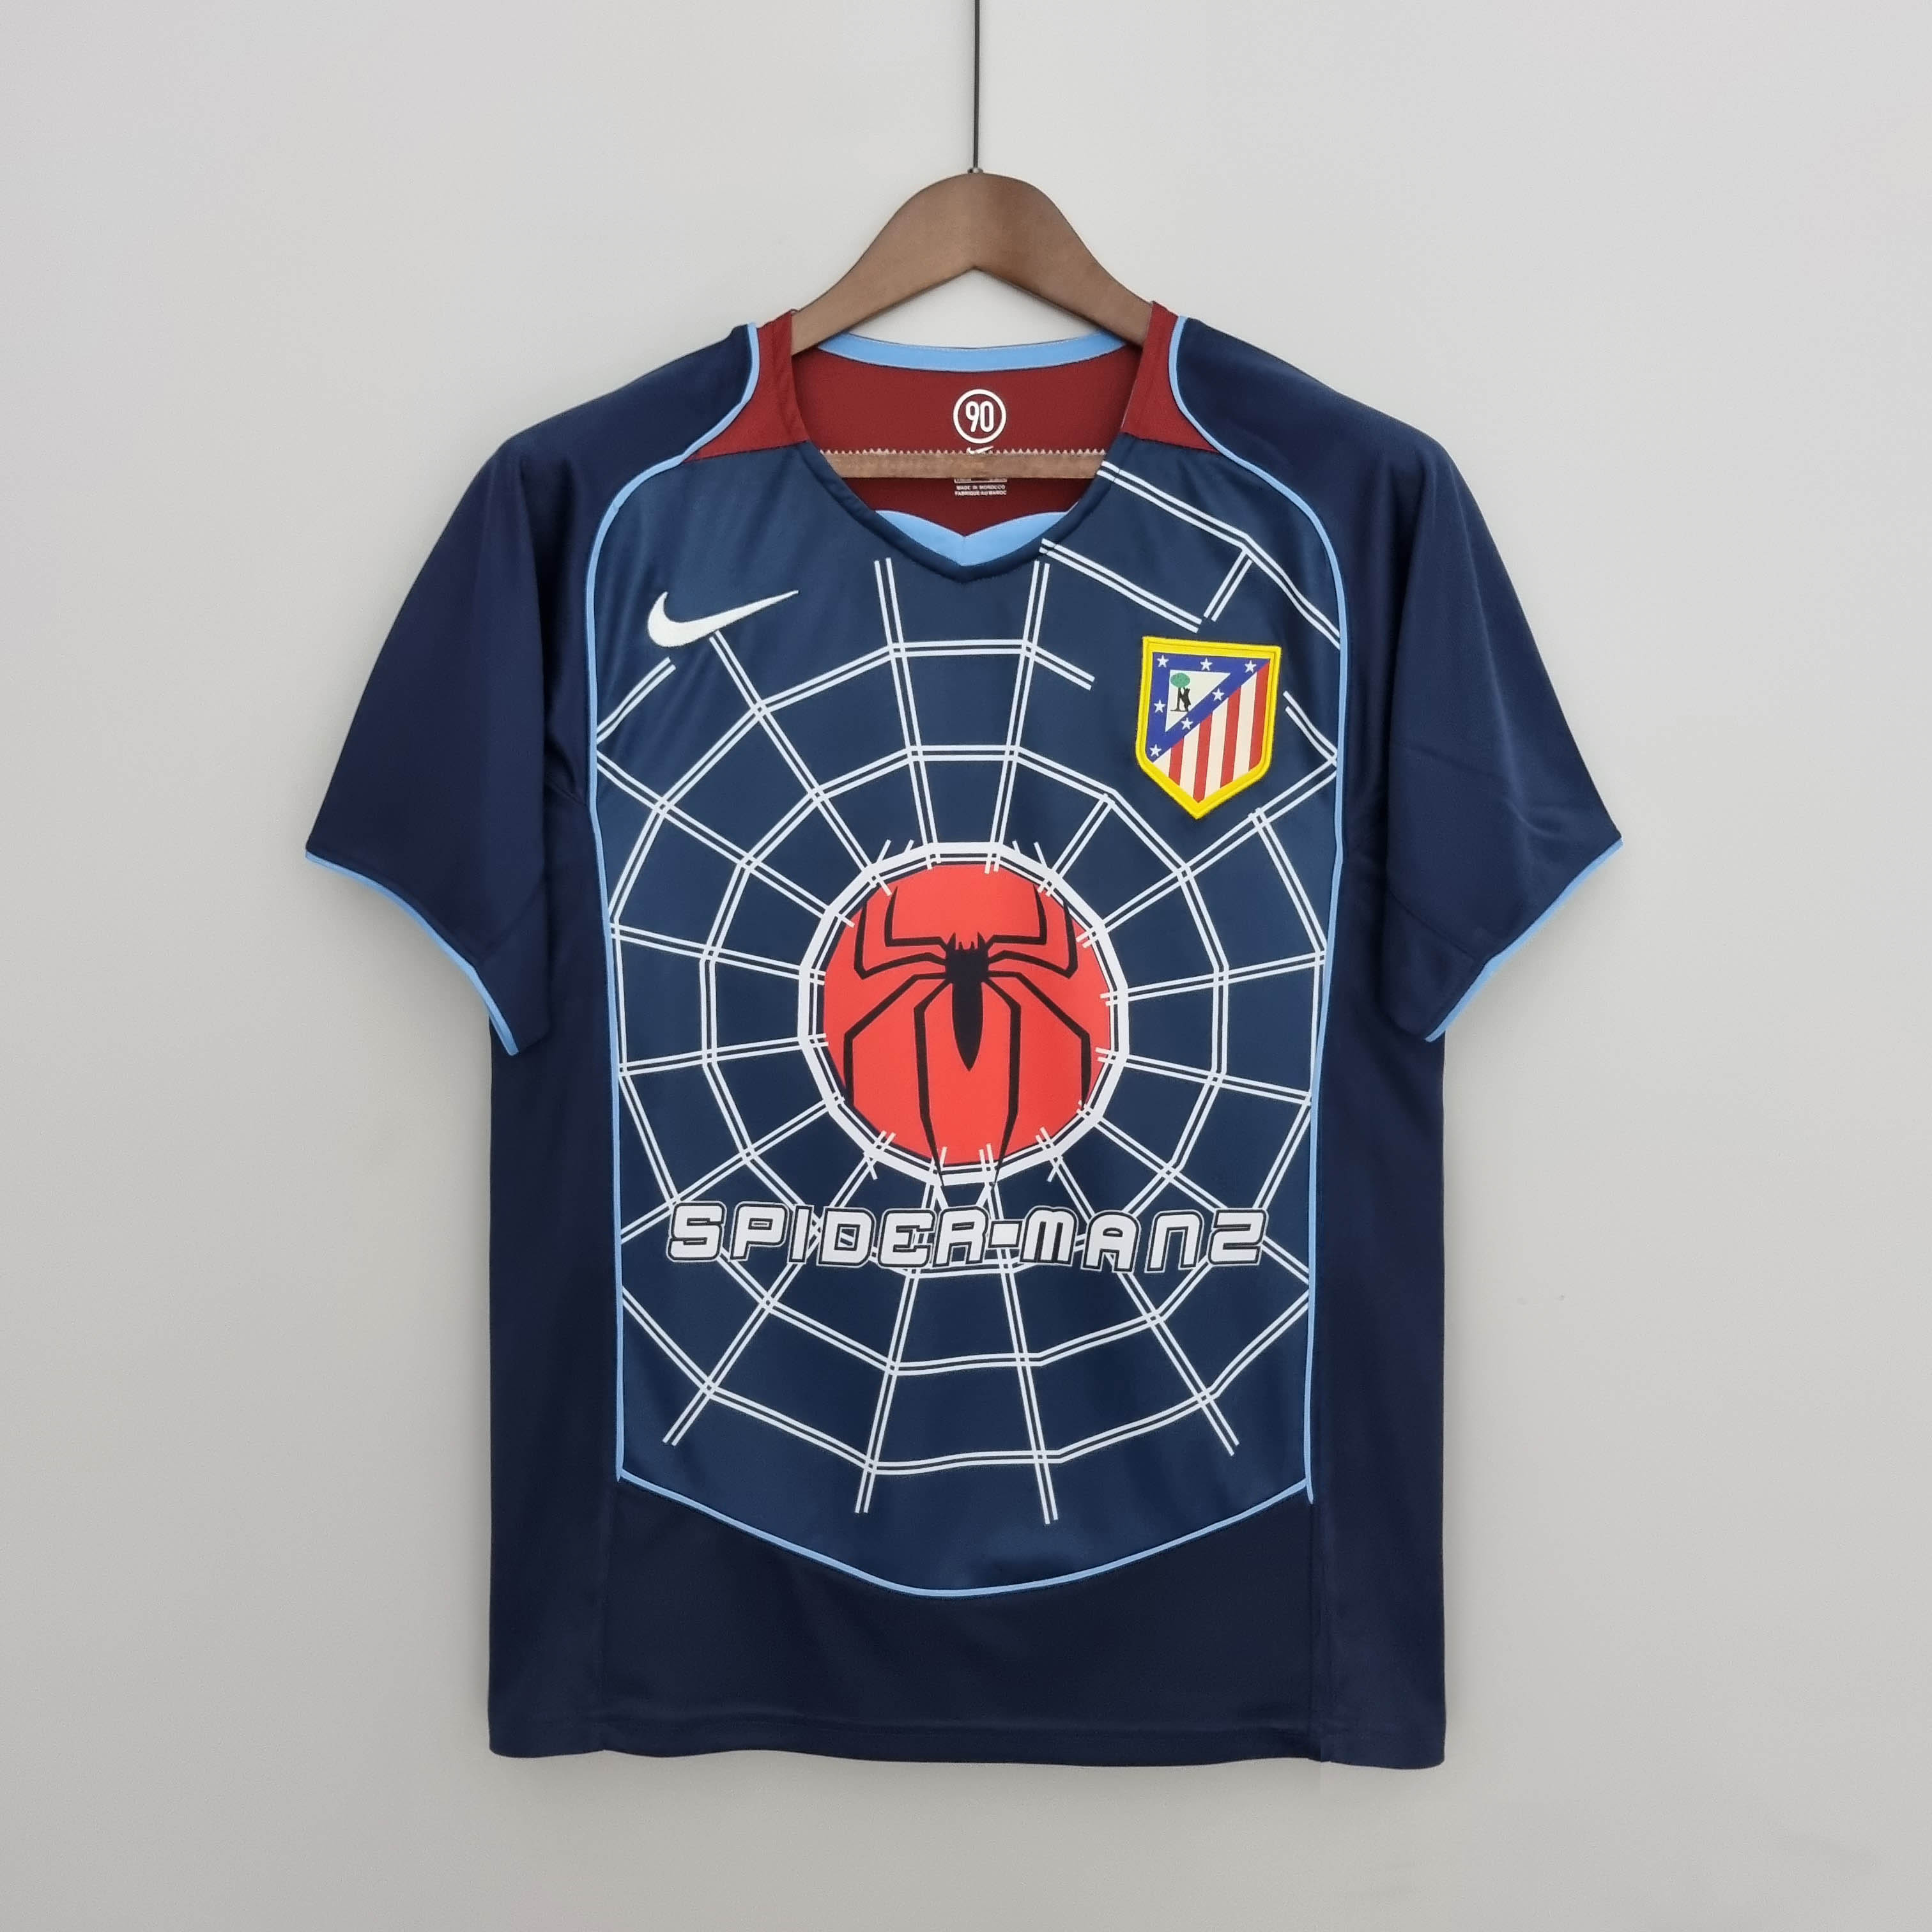 myfanshirt Personalizado At. Madrid Camiseta Madrid Regalos ATLÉTICO Hombre  Comprar Compatible